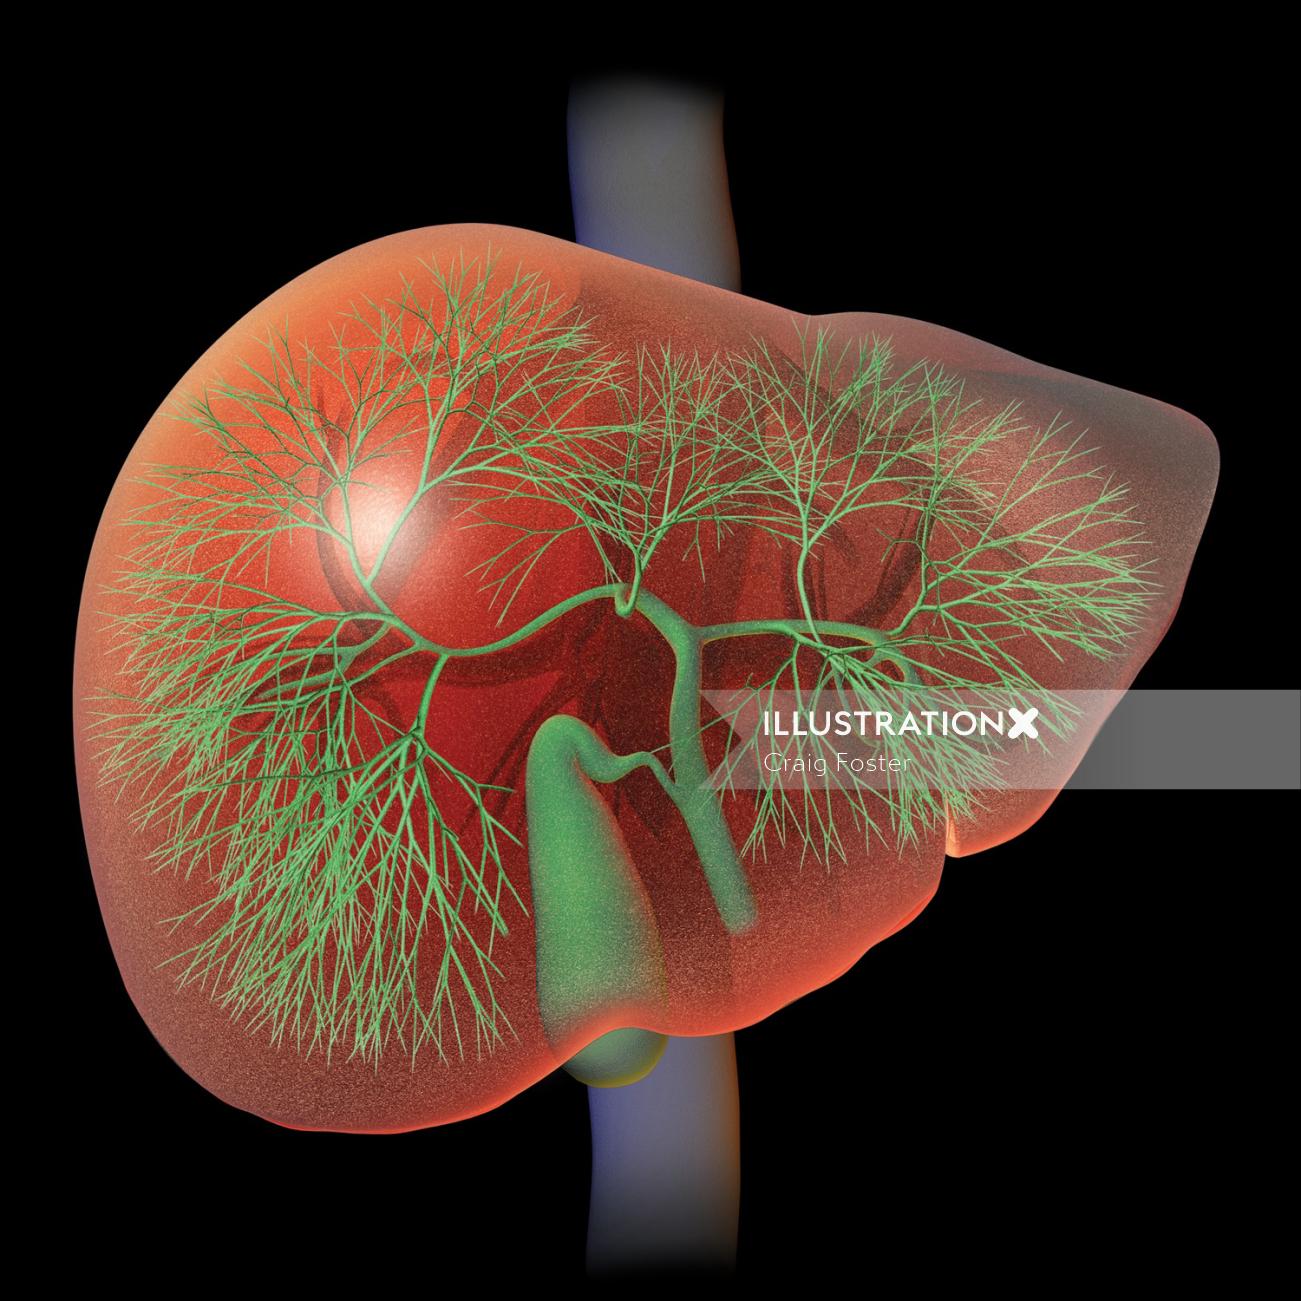 Uma ilustração da anatomia do fígado